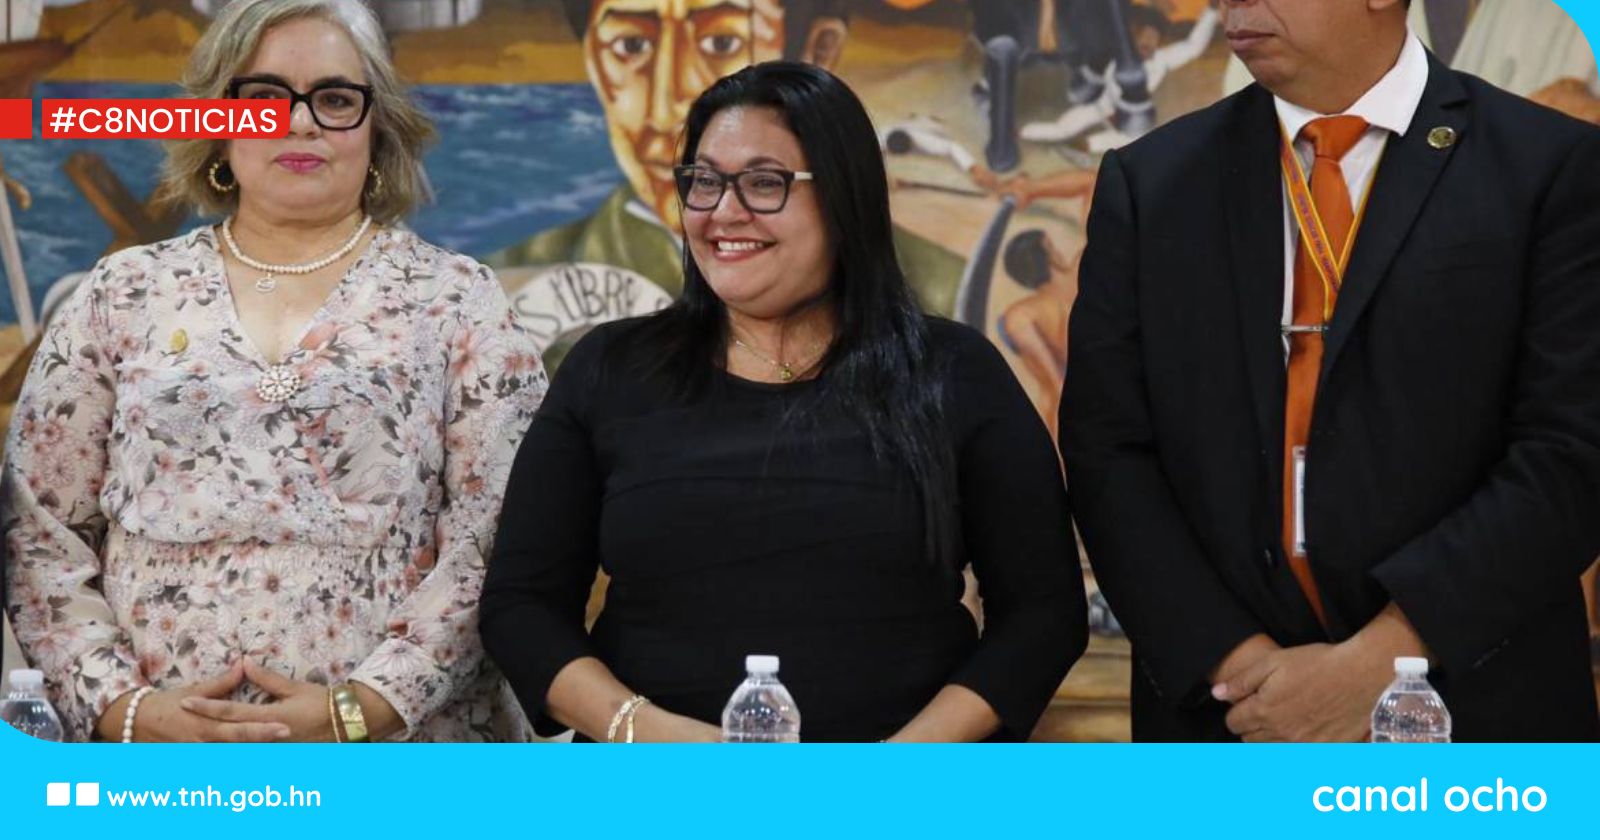 Eligen a Lexy Medina como nueva rectora de la UPNFM